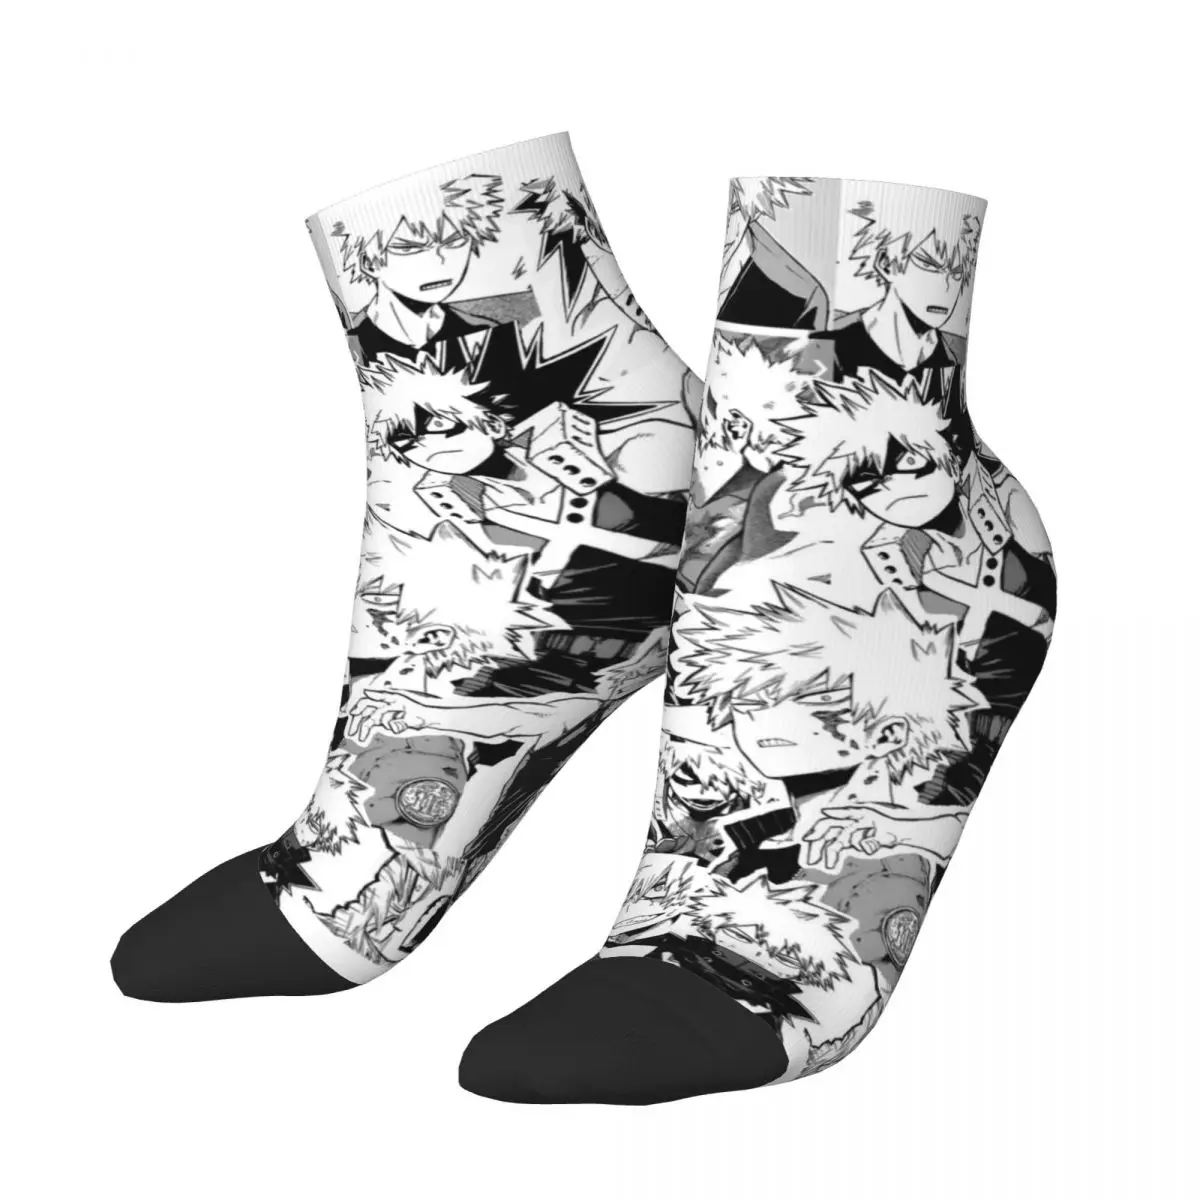 

Зимние теплые смешные короткие носки унисекс Katsuki Bakugo Boku no My Hero Академия аниме дышащие баскетбольные низкие носки